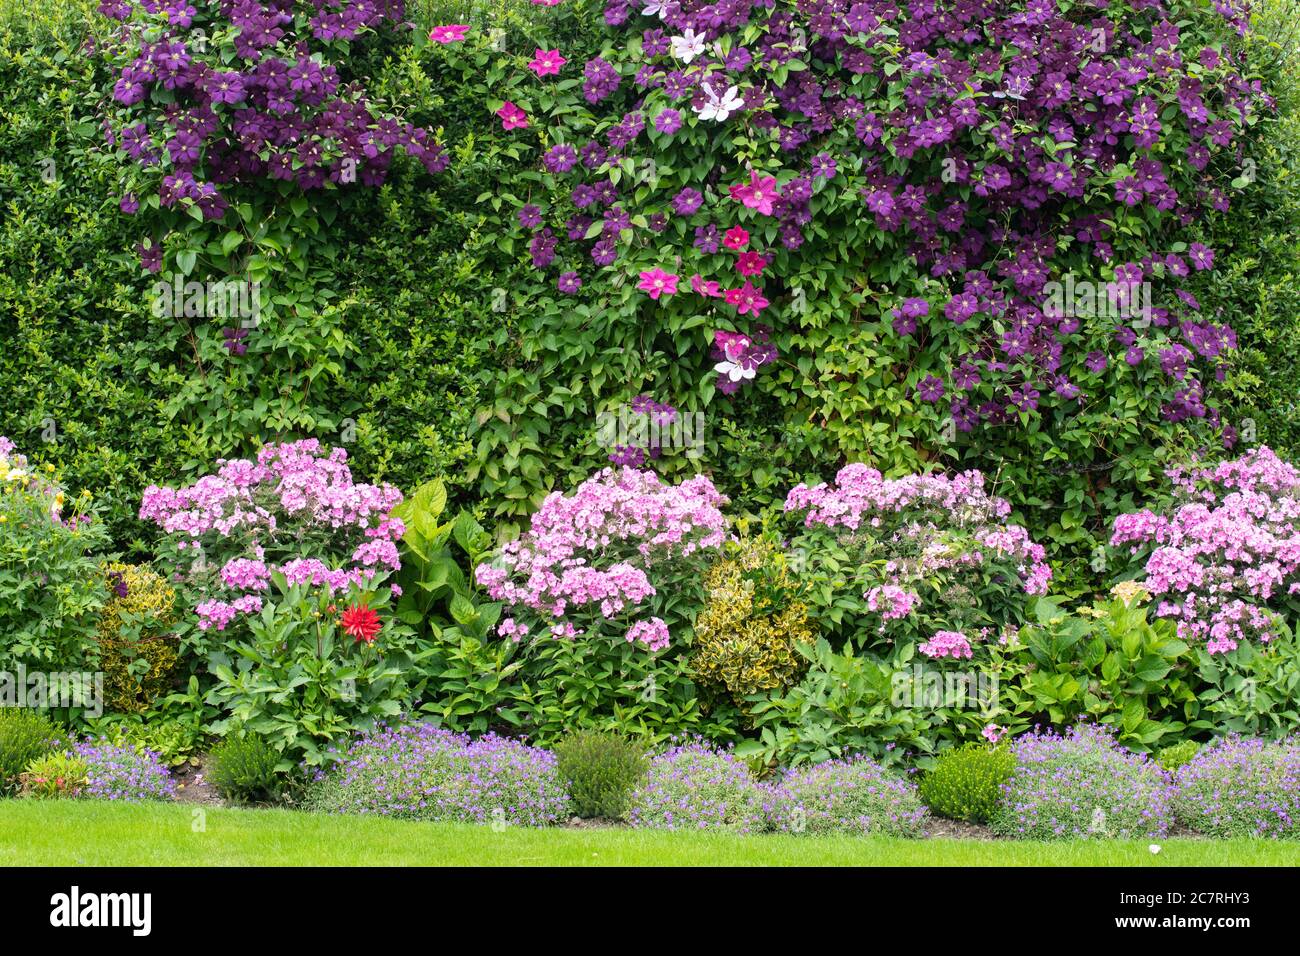 Colorista y pequeño jardín de verano frontera con clematis creciendo a través de la cobertura de piracantha por encima de flox rosa, hortensias, dahlias y aubritia - Inglaterra, Reino Unido Foto de stock